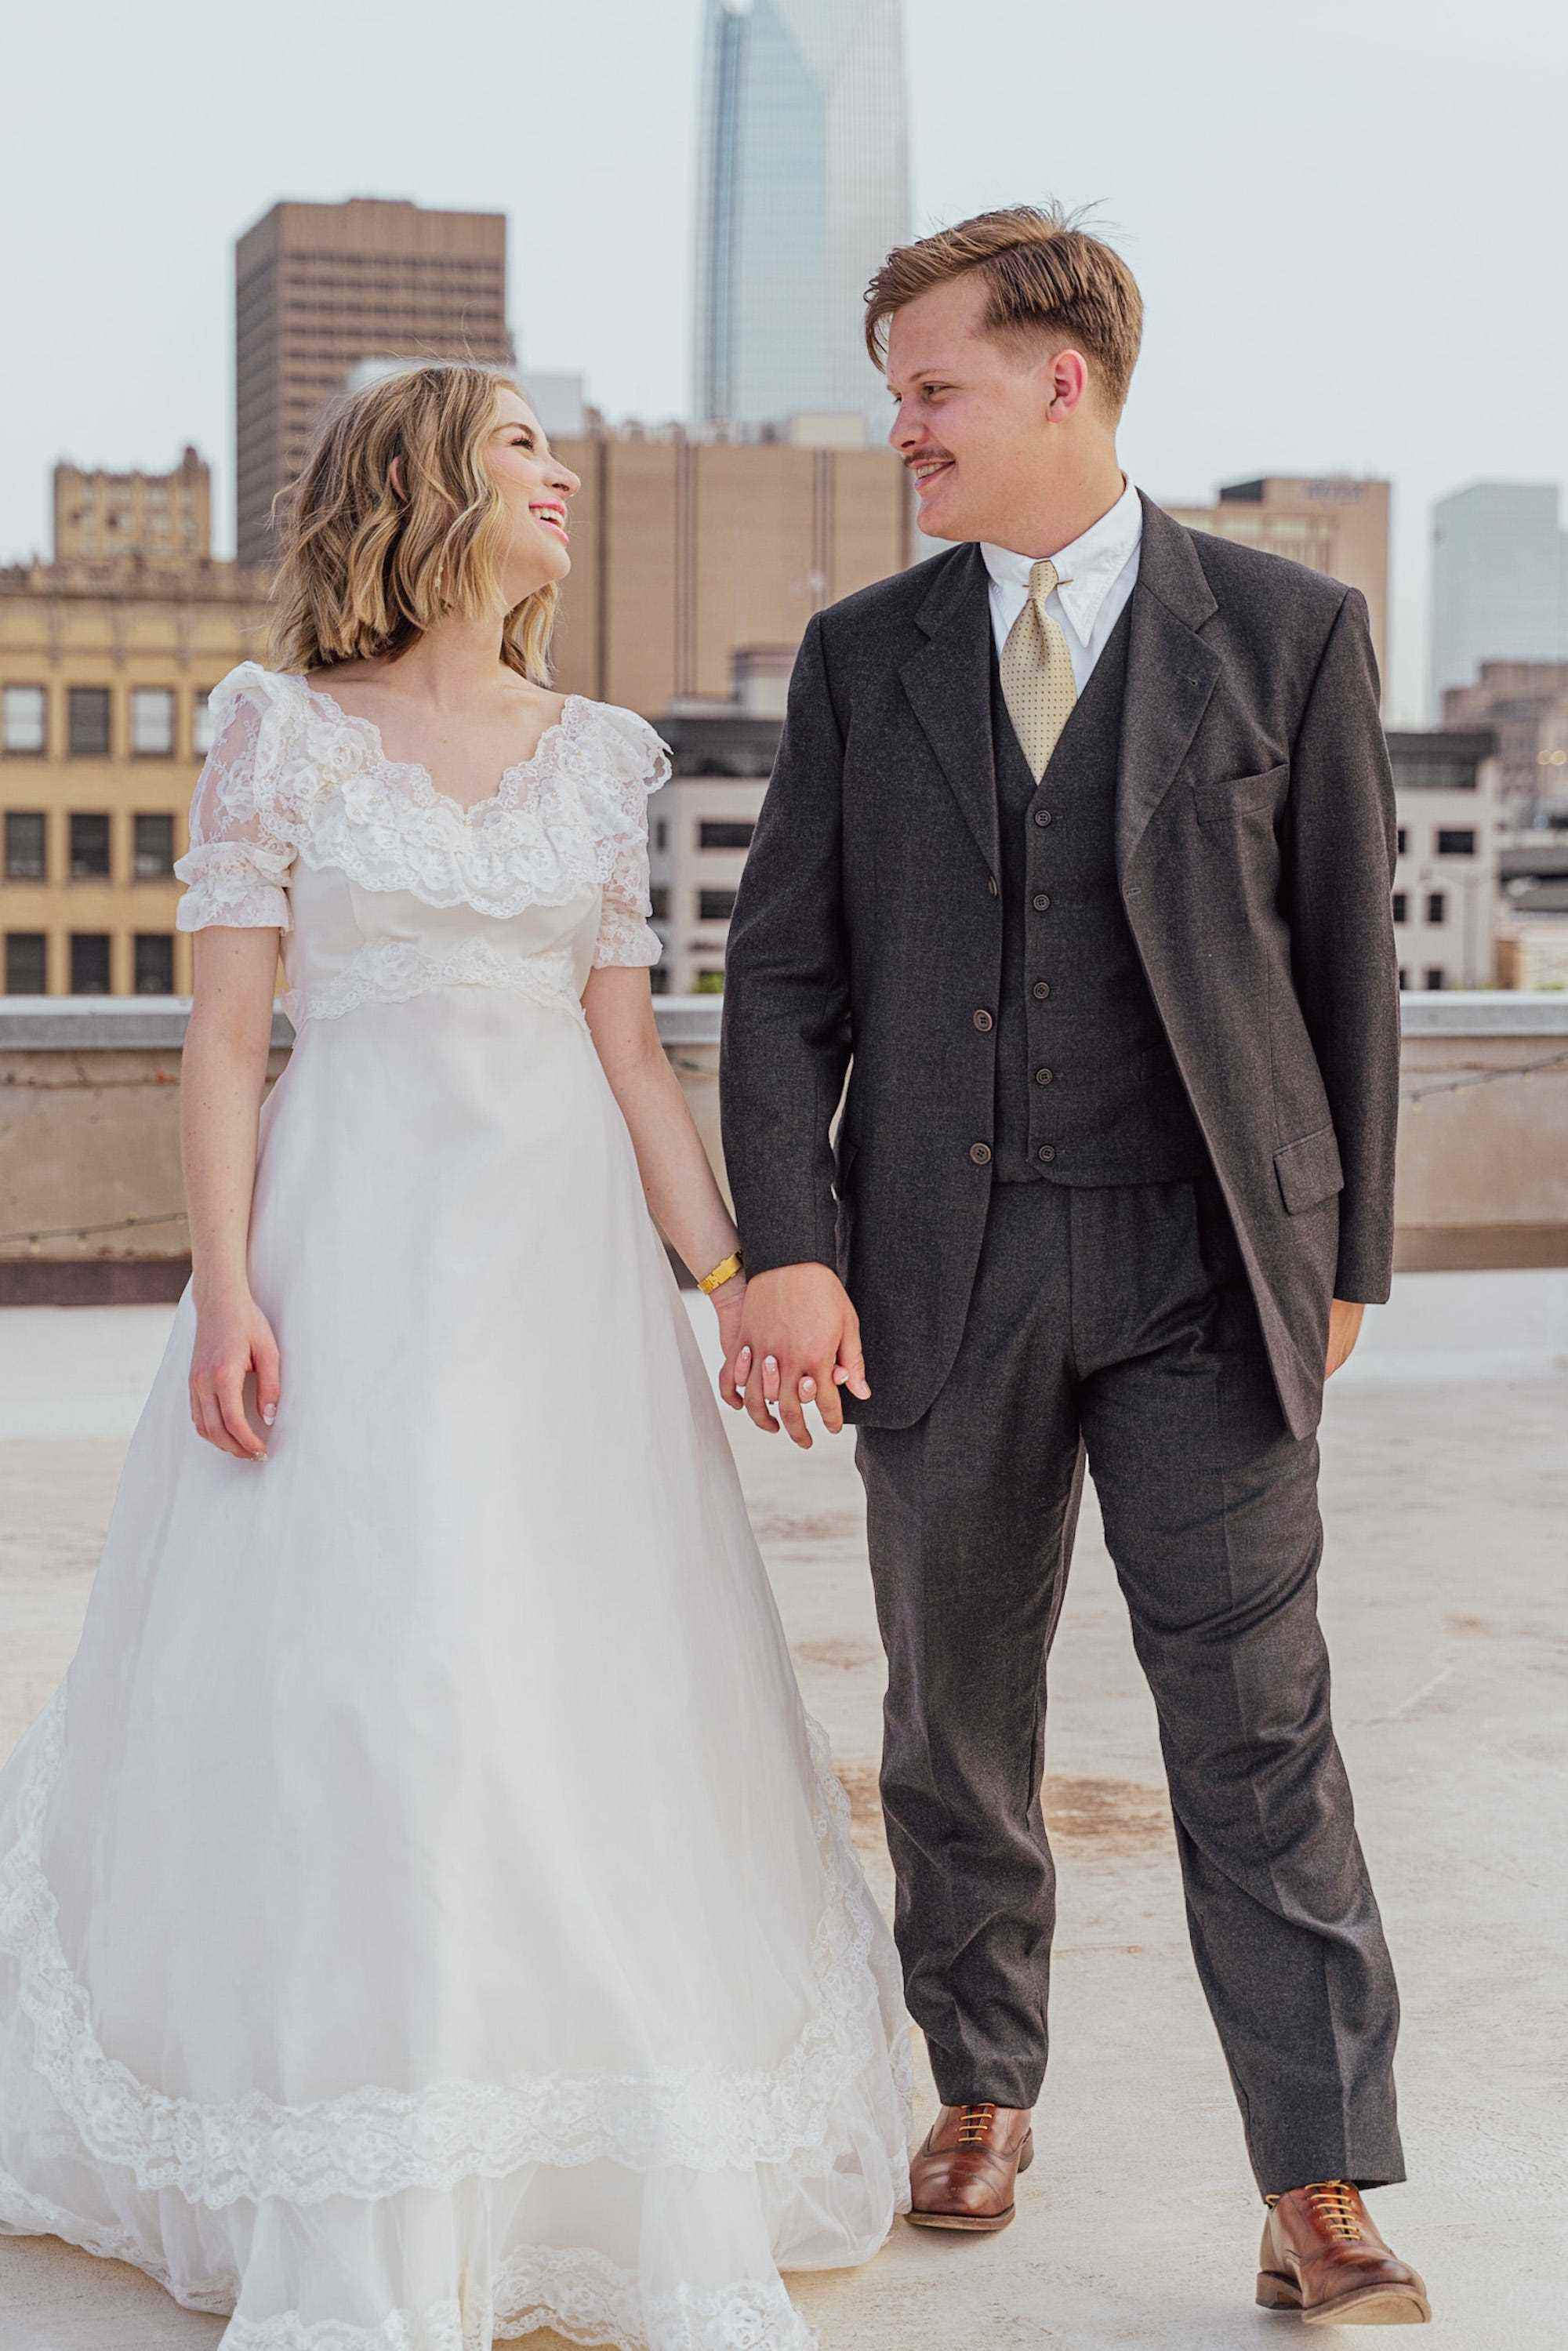 Eine Braut und ein Bräutigam halten sich in ihrer Hochzeitskleidung auf einem Dach an den Händen.